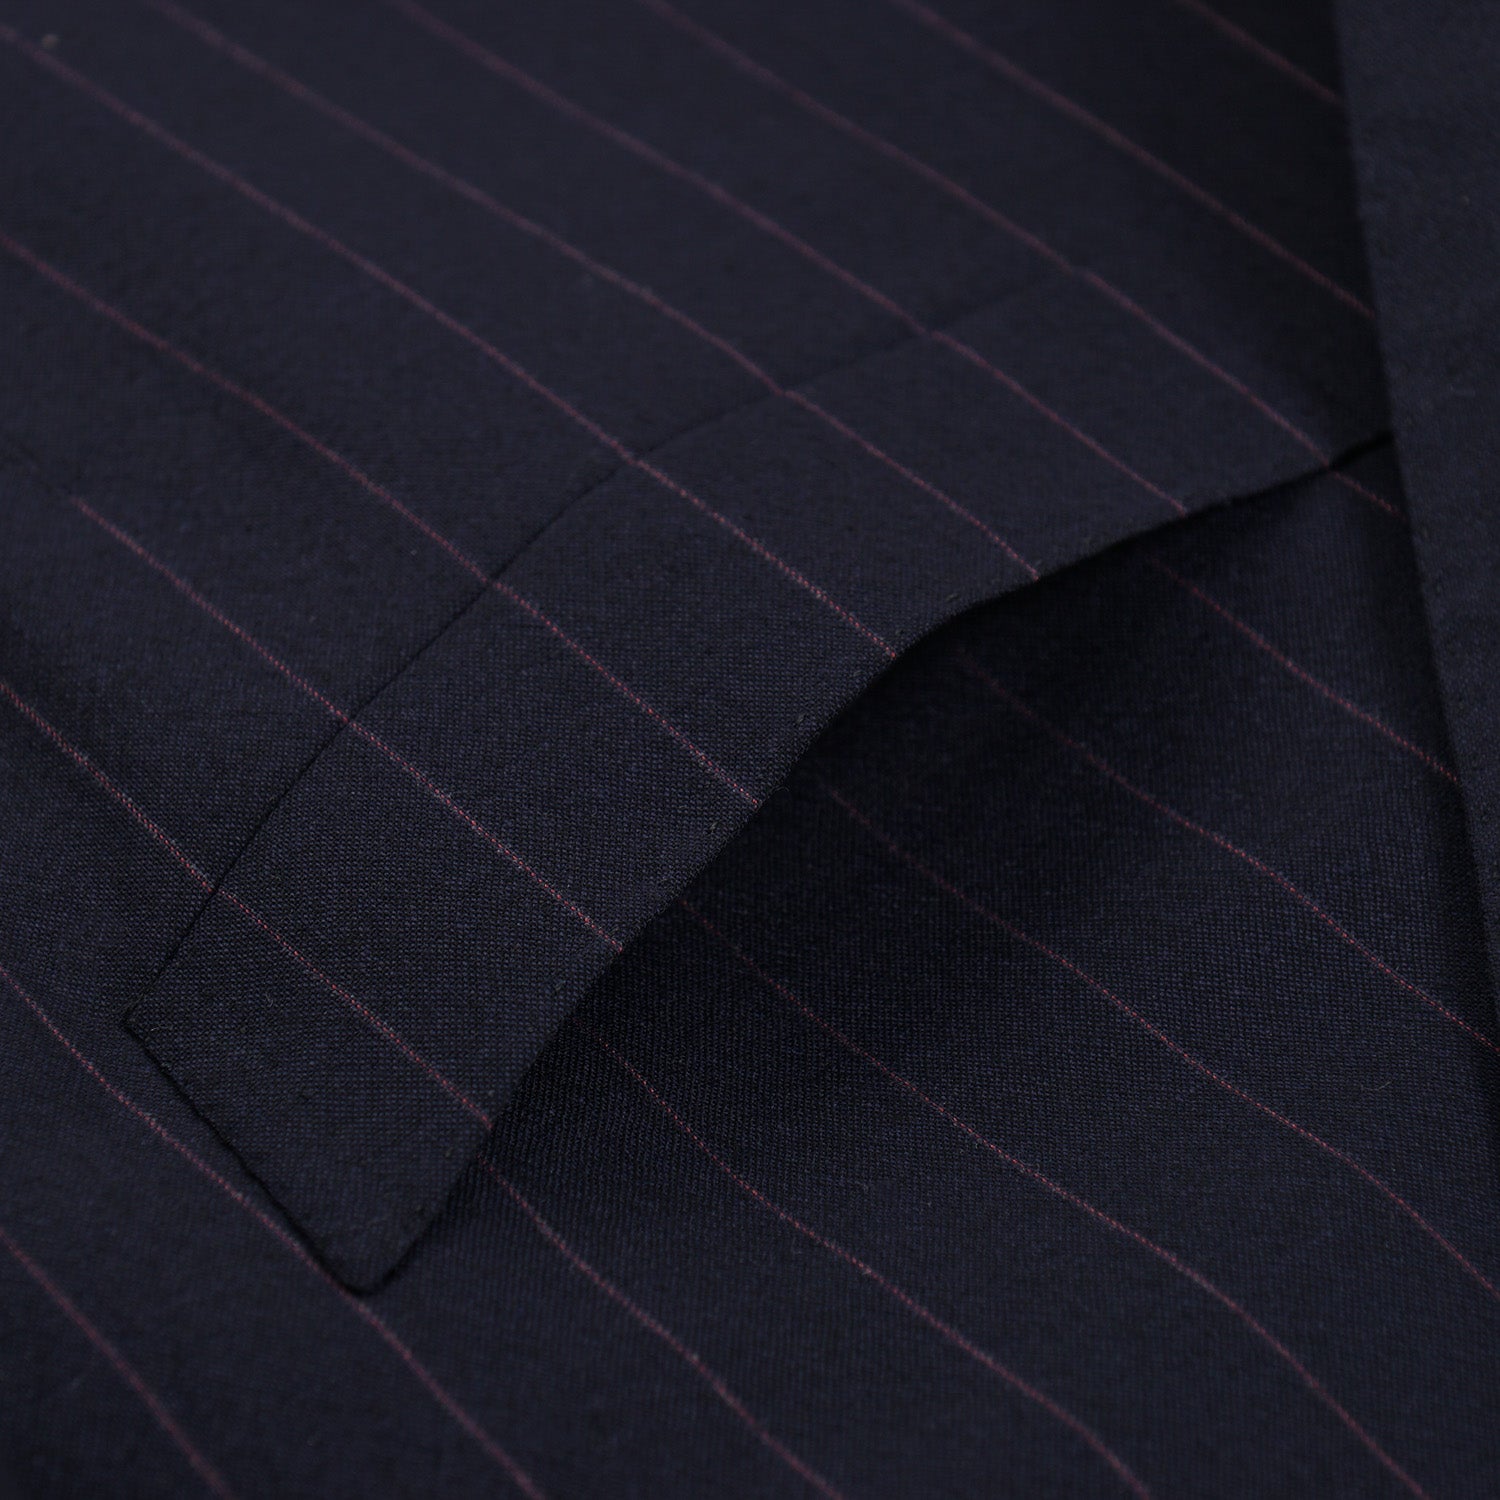 Cesare Attolini Slim-Fit Navy Stripe Wool Suit - Top Shelf Apparel